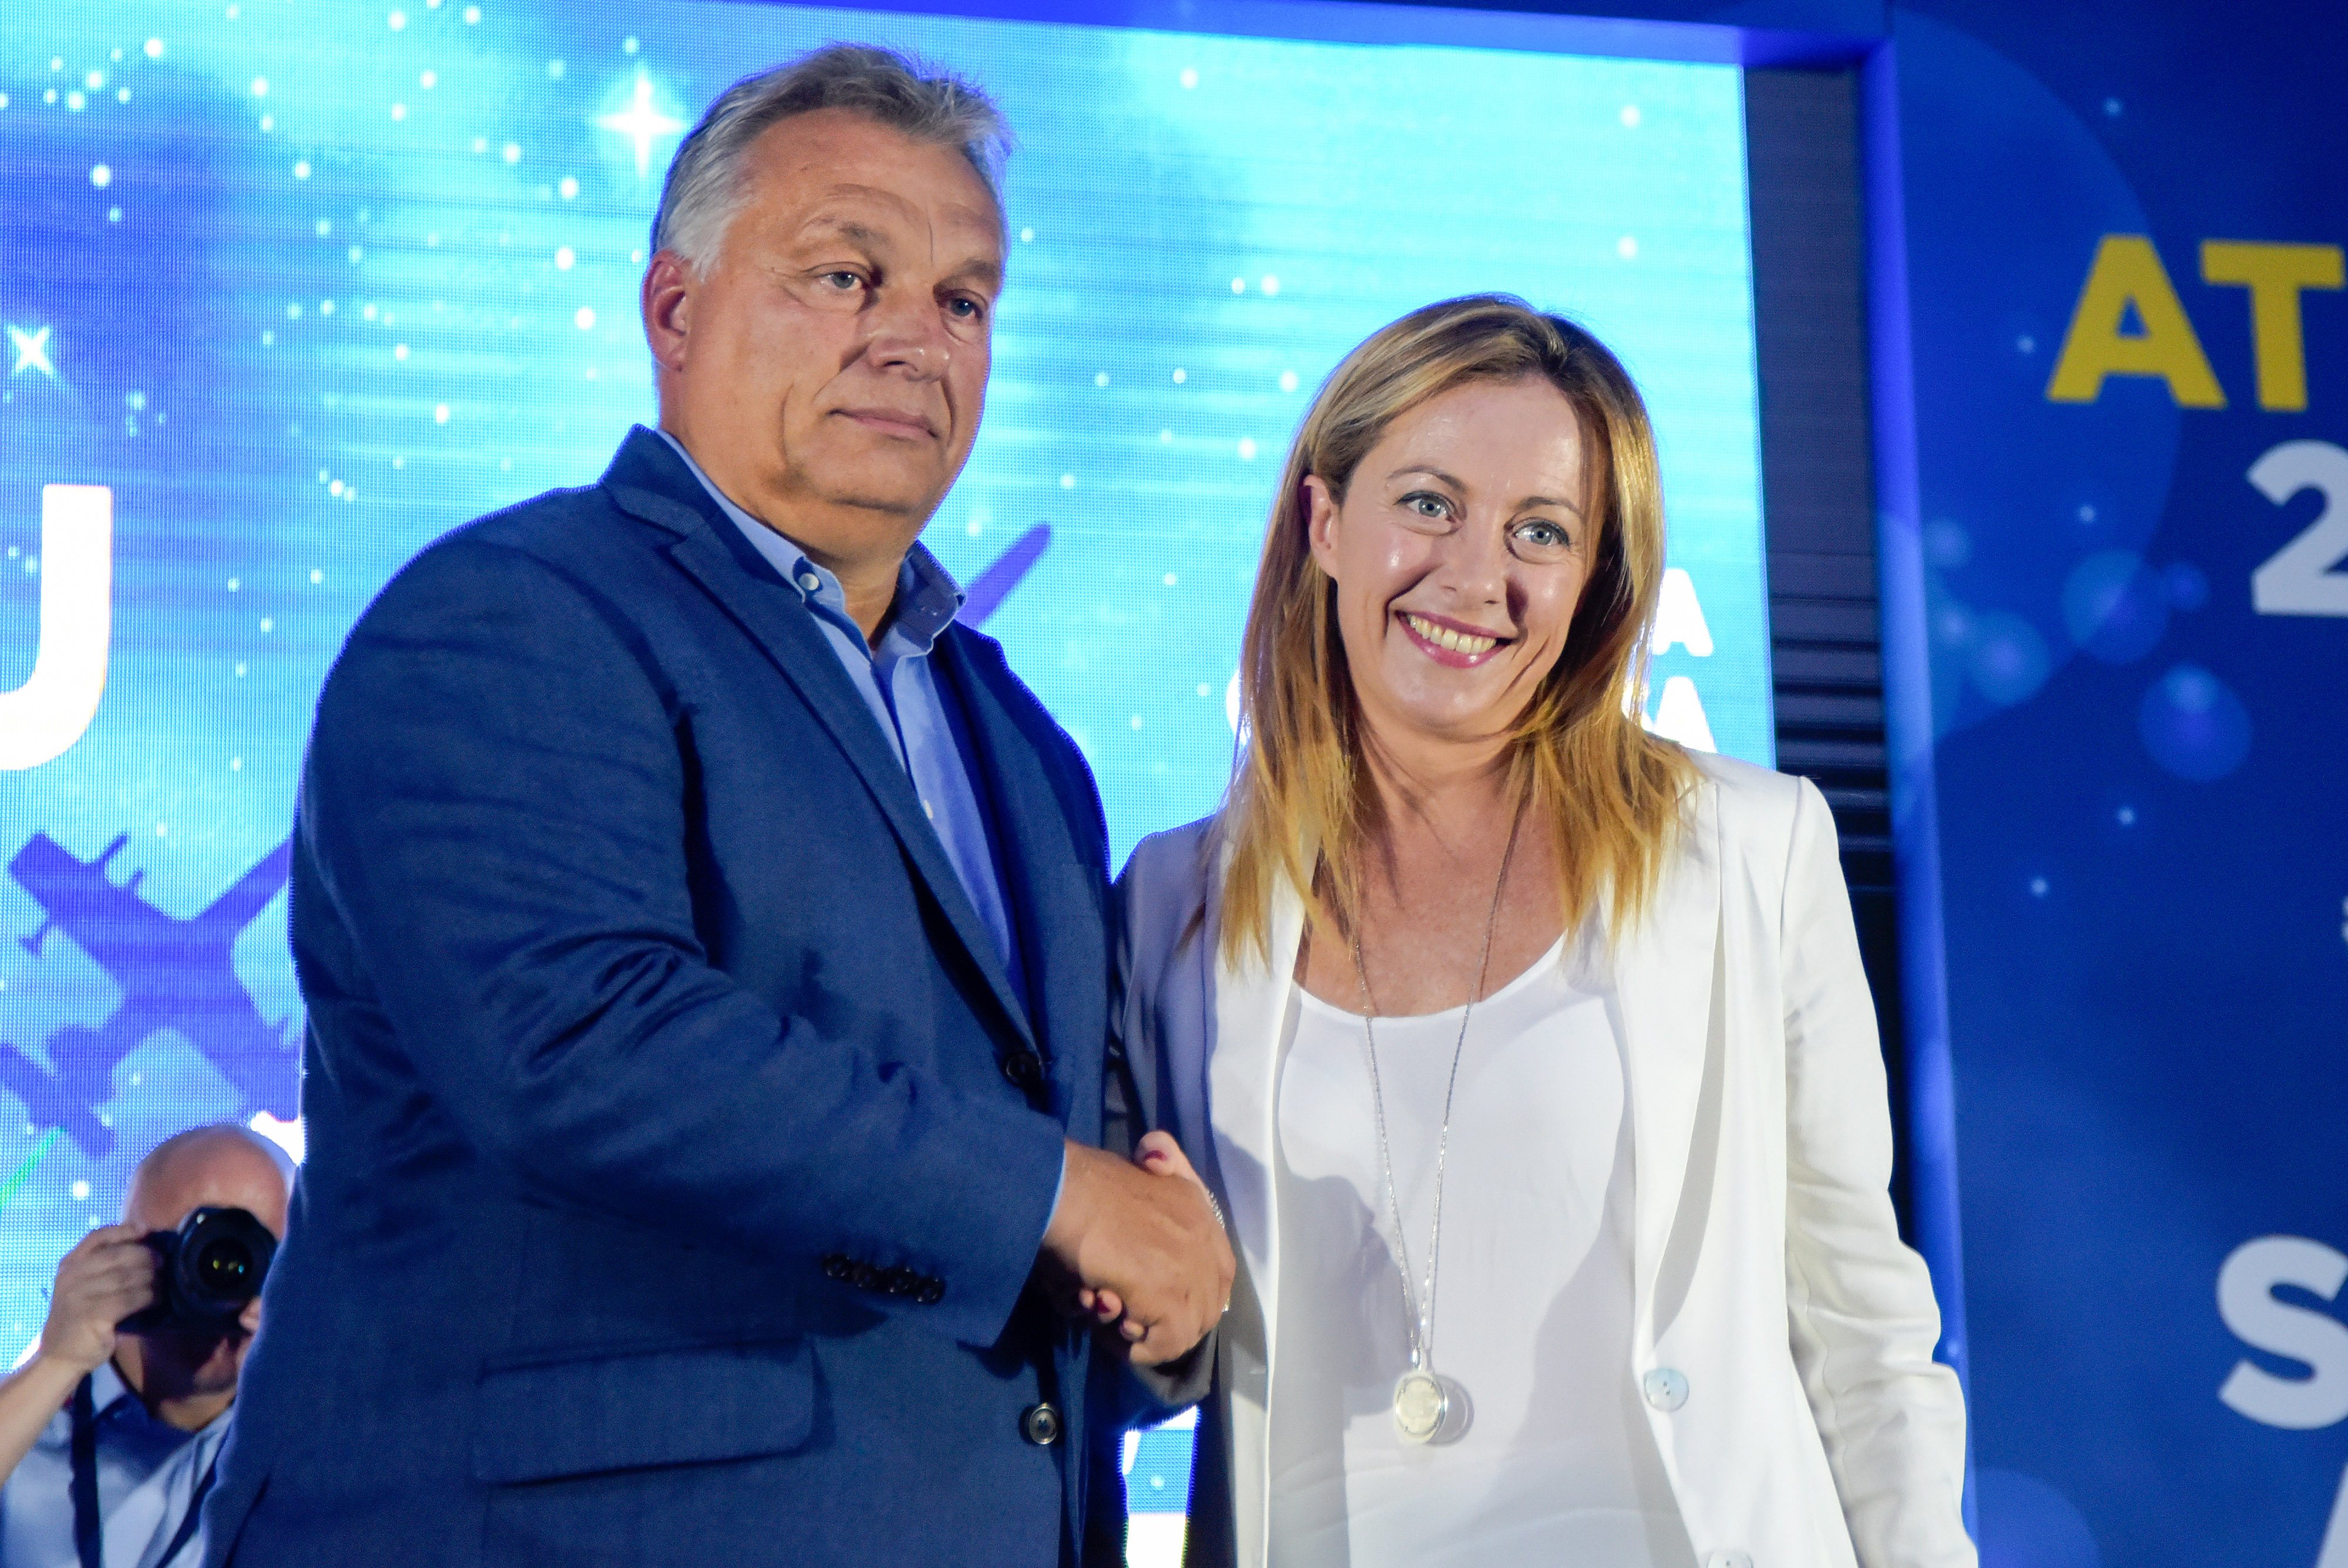 Giorgia Meloni greets the Hungarian Prime Minister Viktor